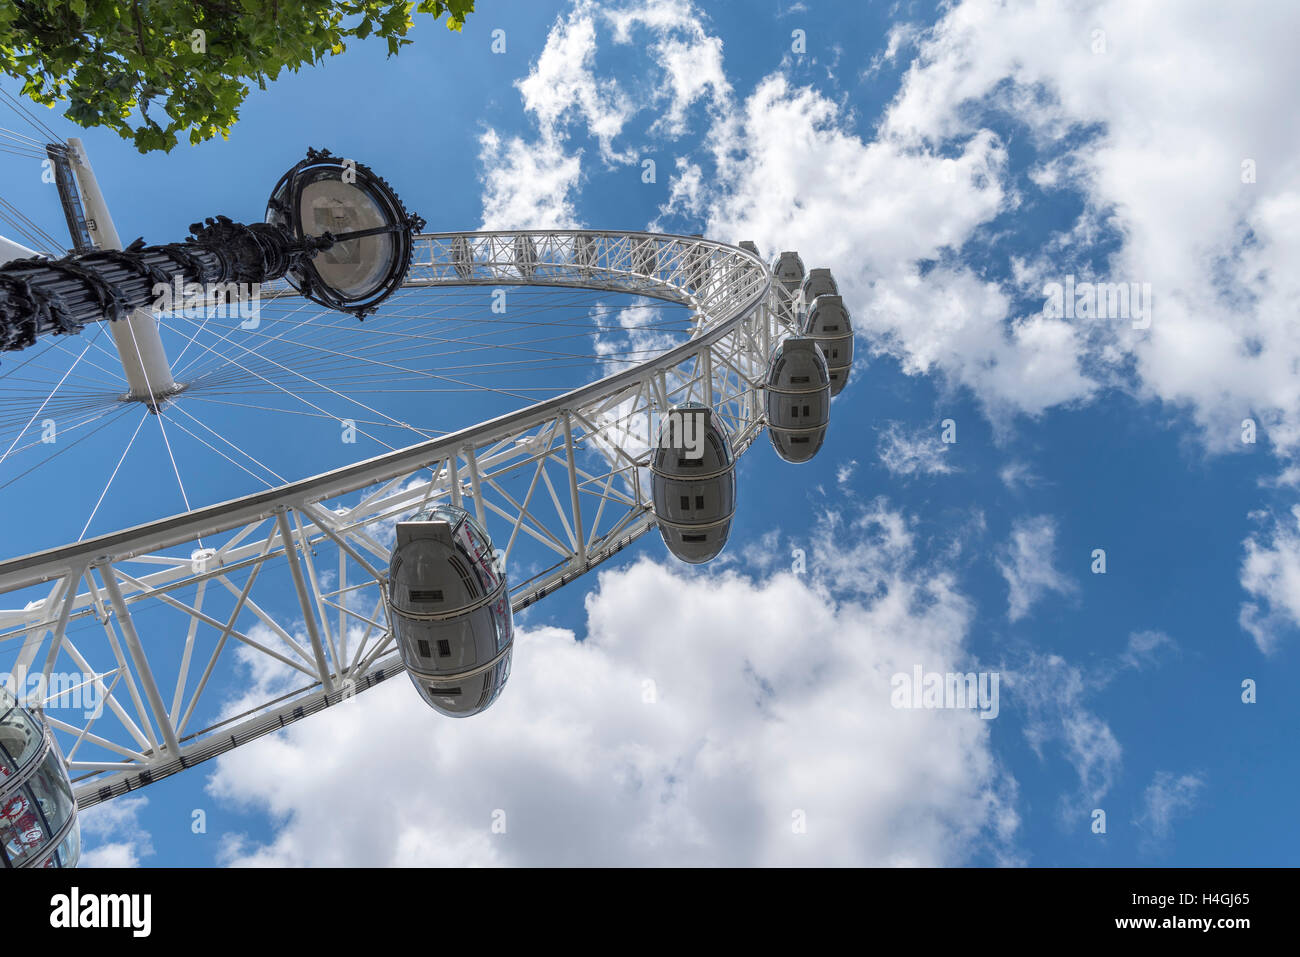 Le London Eye Vue de dessous avec un lampadaire Southbank visible Banque D'Images